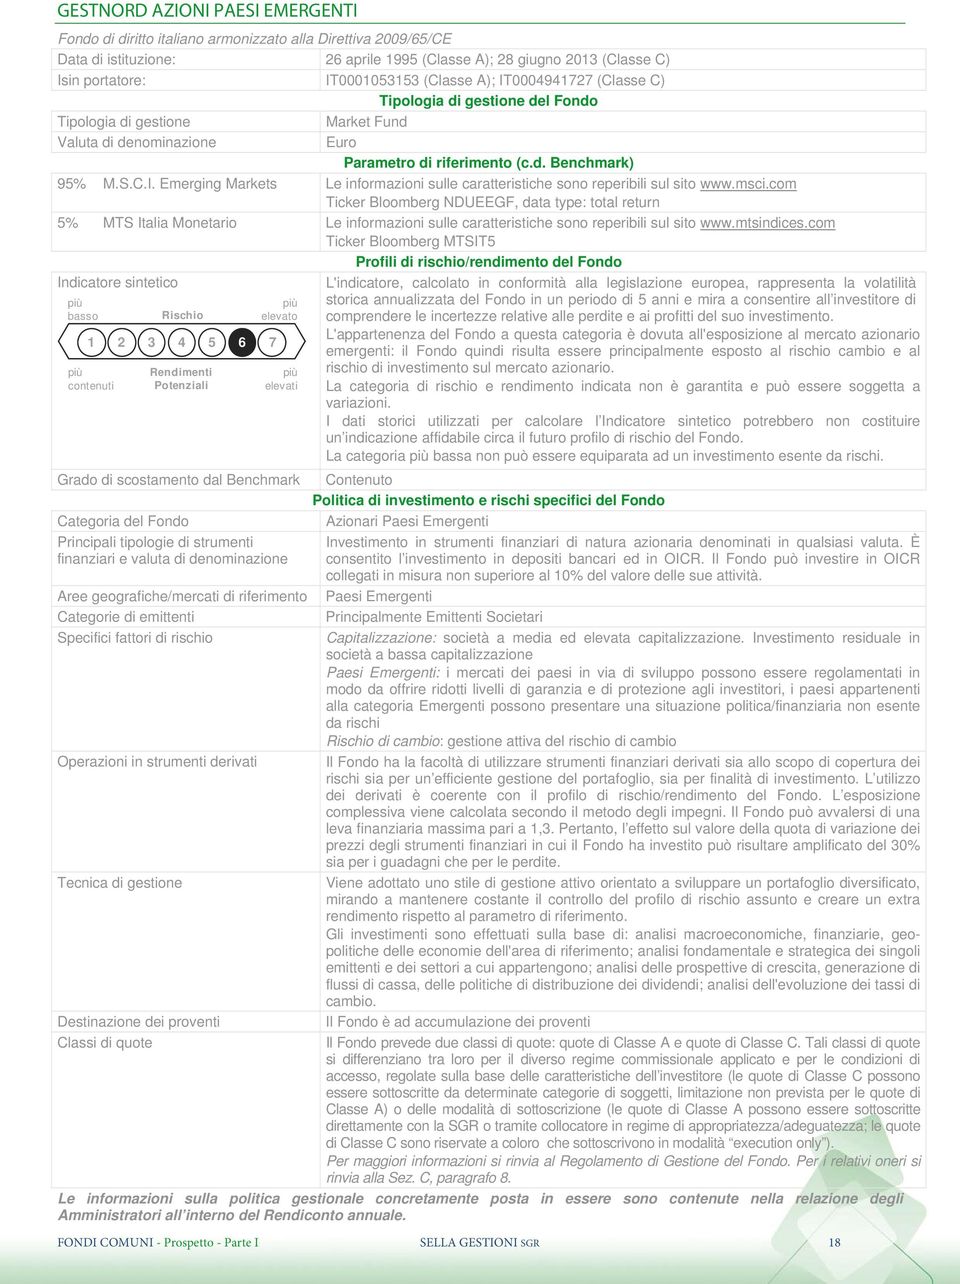 msci.com Ticker Bloomberg NDUEEGF, data type: total return 5% MTS Italia Monetario Le informazioni sulle caratteristiche sono reperibili sul sito www.mtsindices.